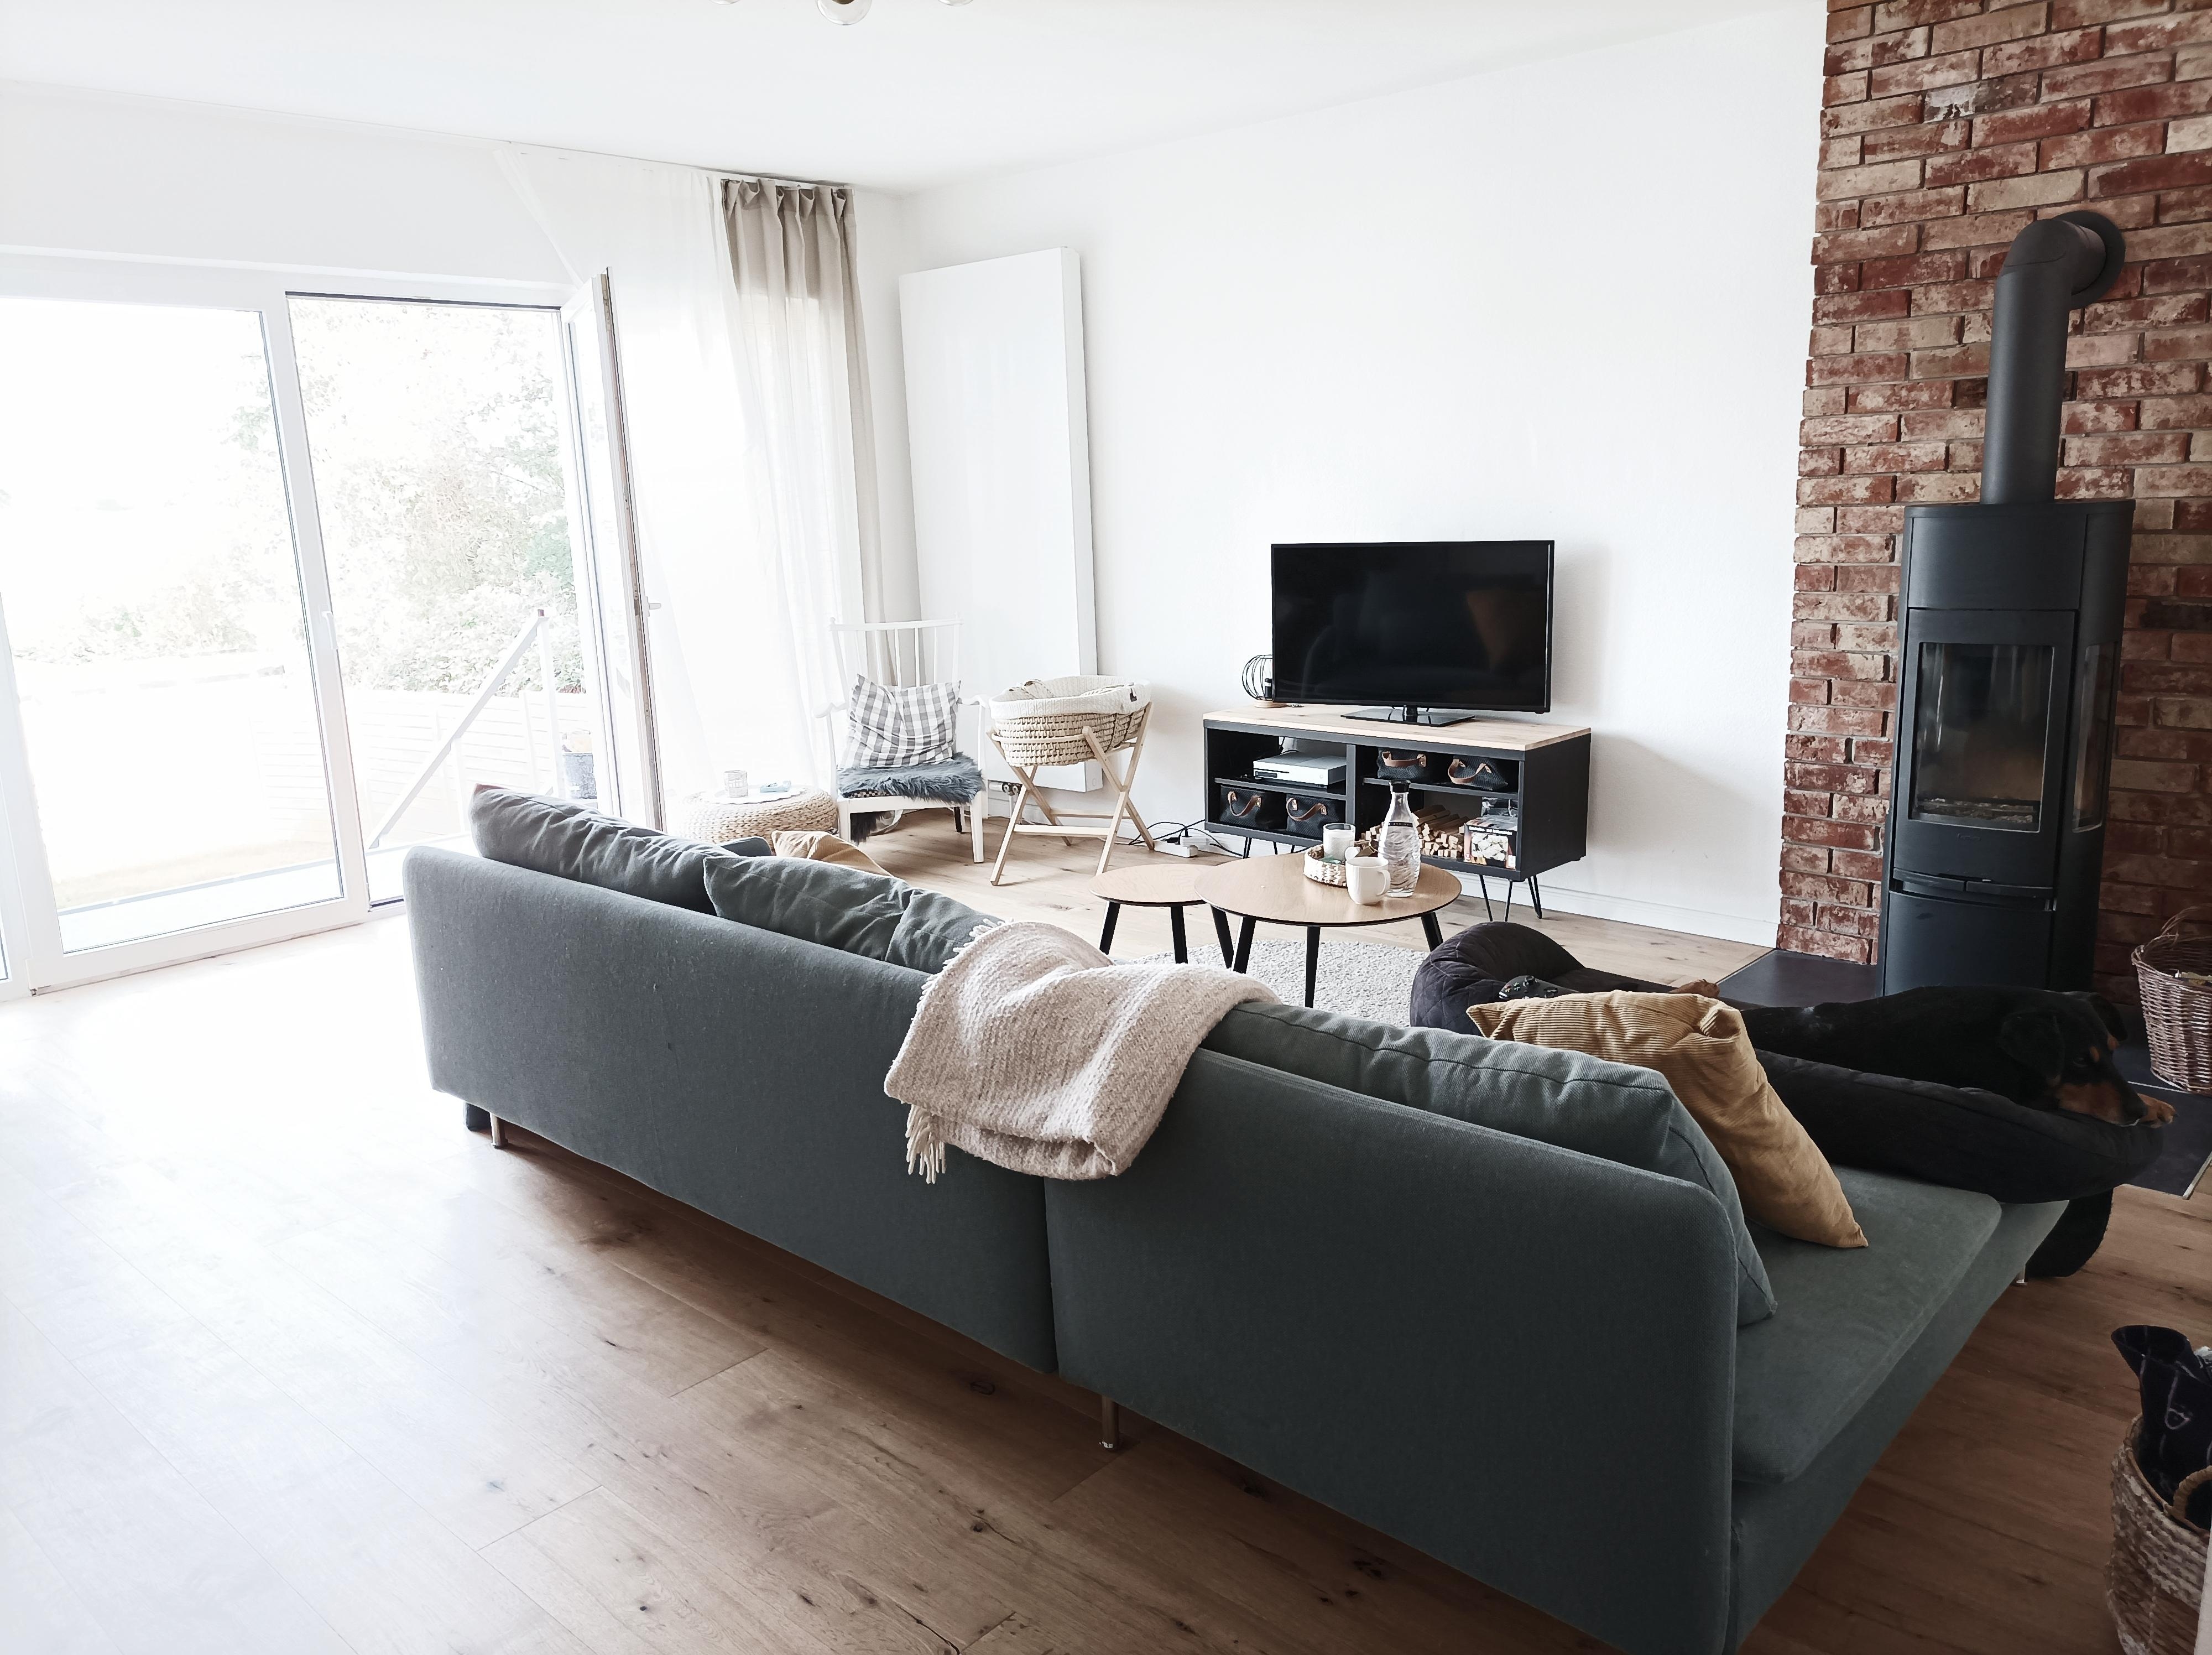 Nach einem Jahr wurde eine Veränderung benötigt #wohnzimmer #umräumen #sofa #sofaimraum #kamin #echtholzboden